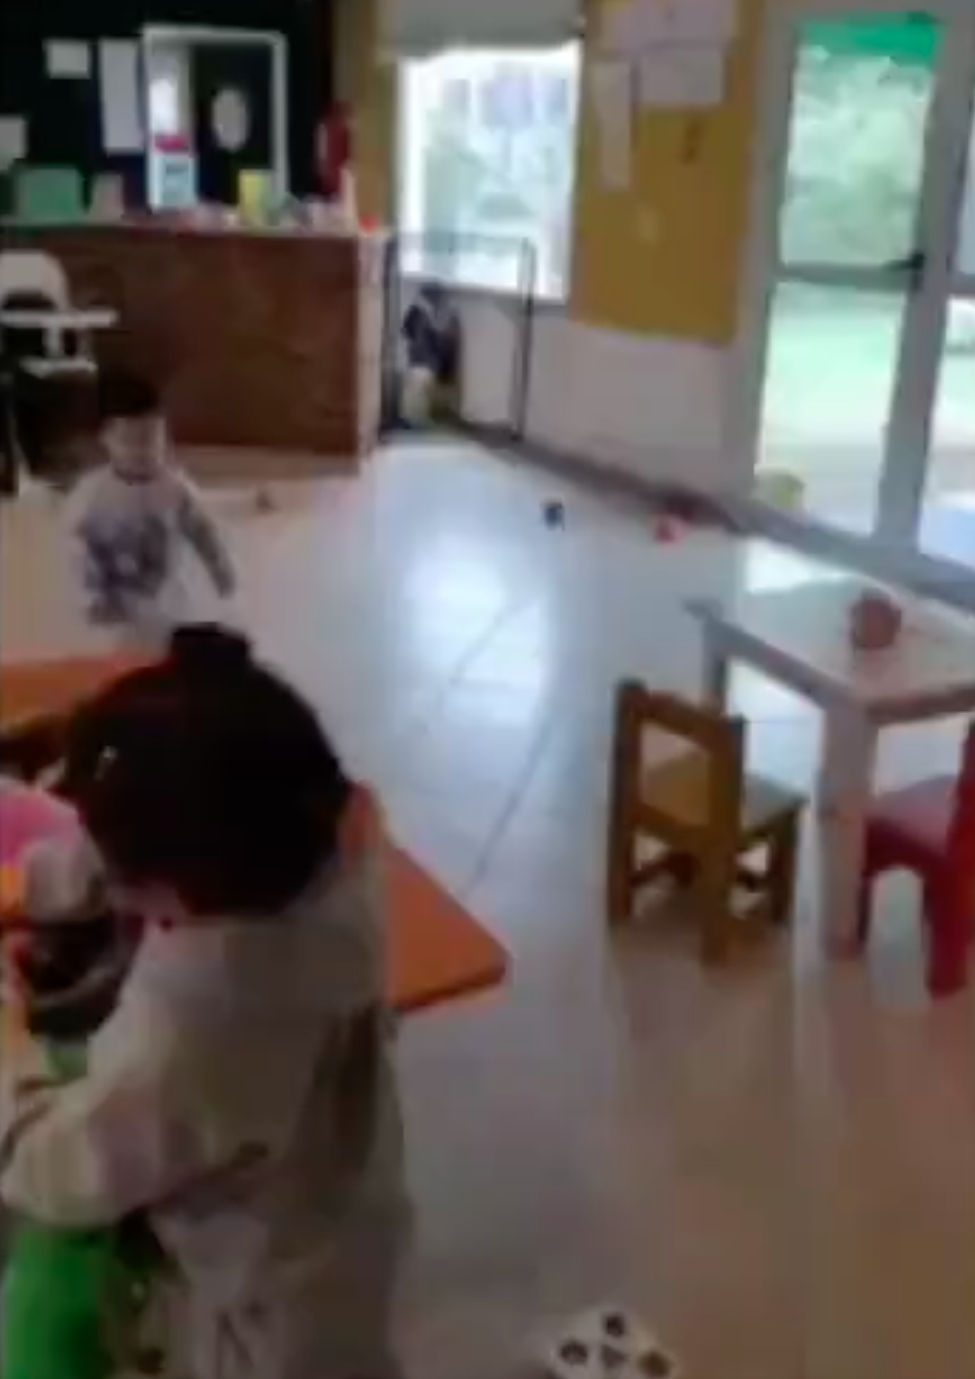 Otros pequeños juegan mientras que a un niño se le aísla tras una reja | Foto: Twitter.com/AgenciaElVigia